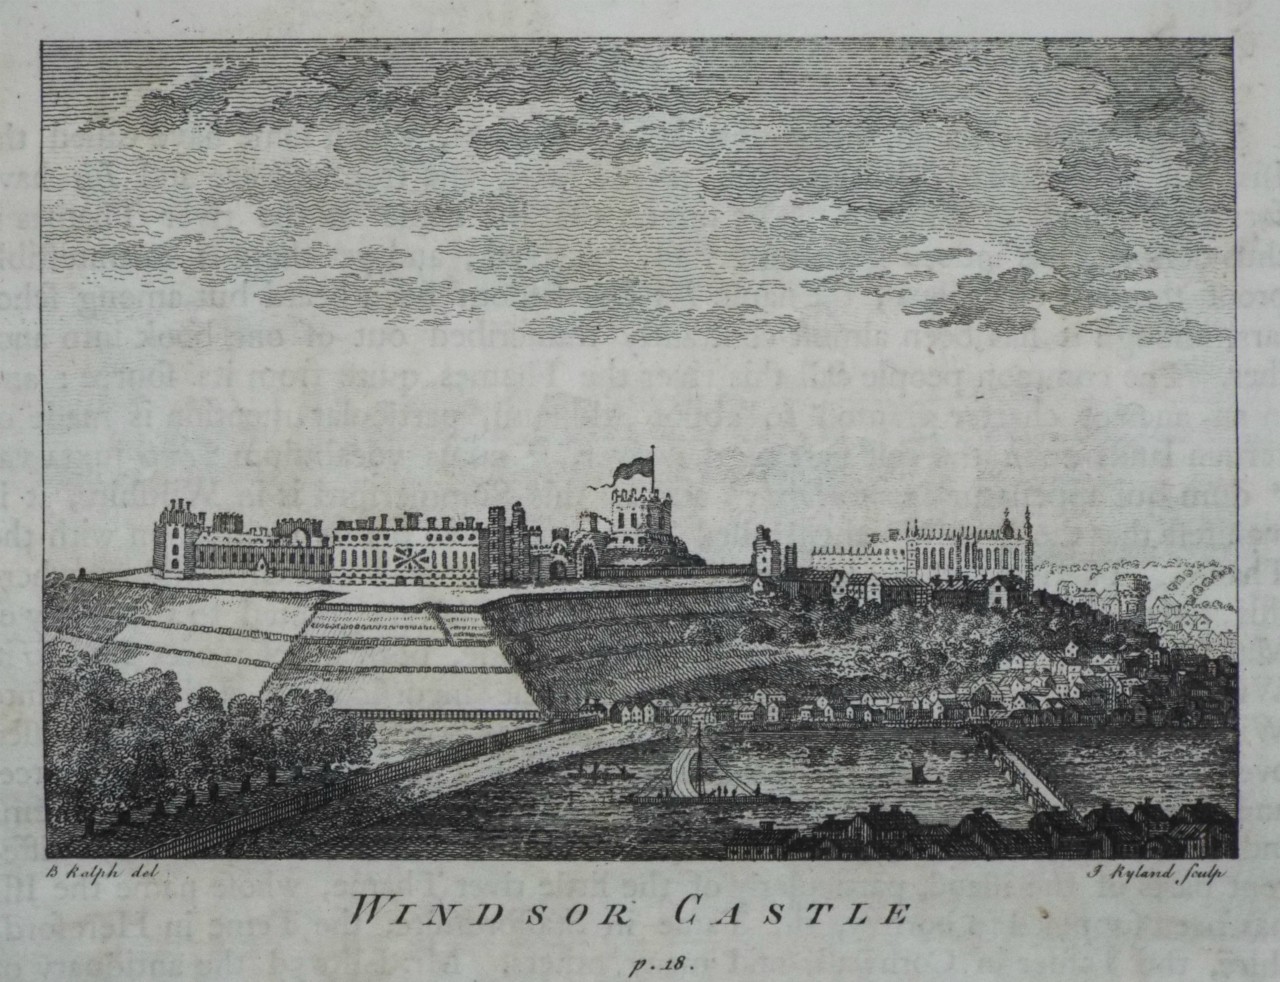 Print - Windsor Castle p.18. - Ryland